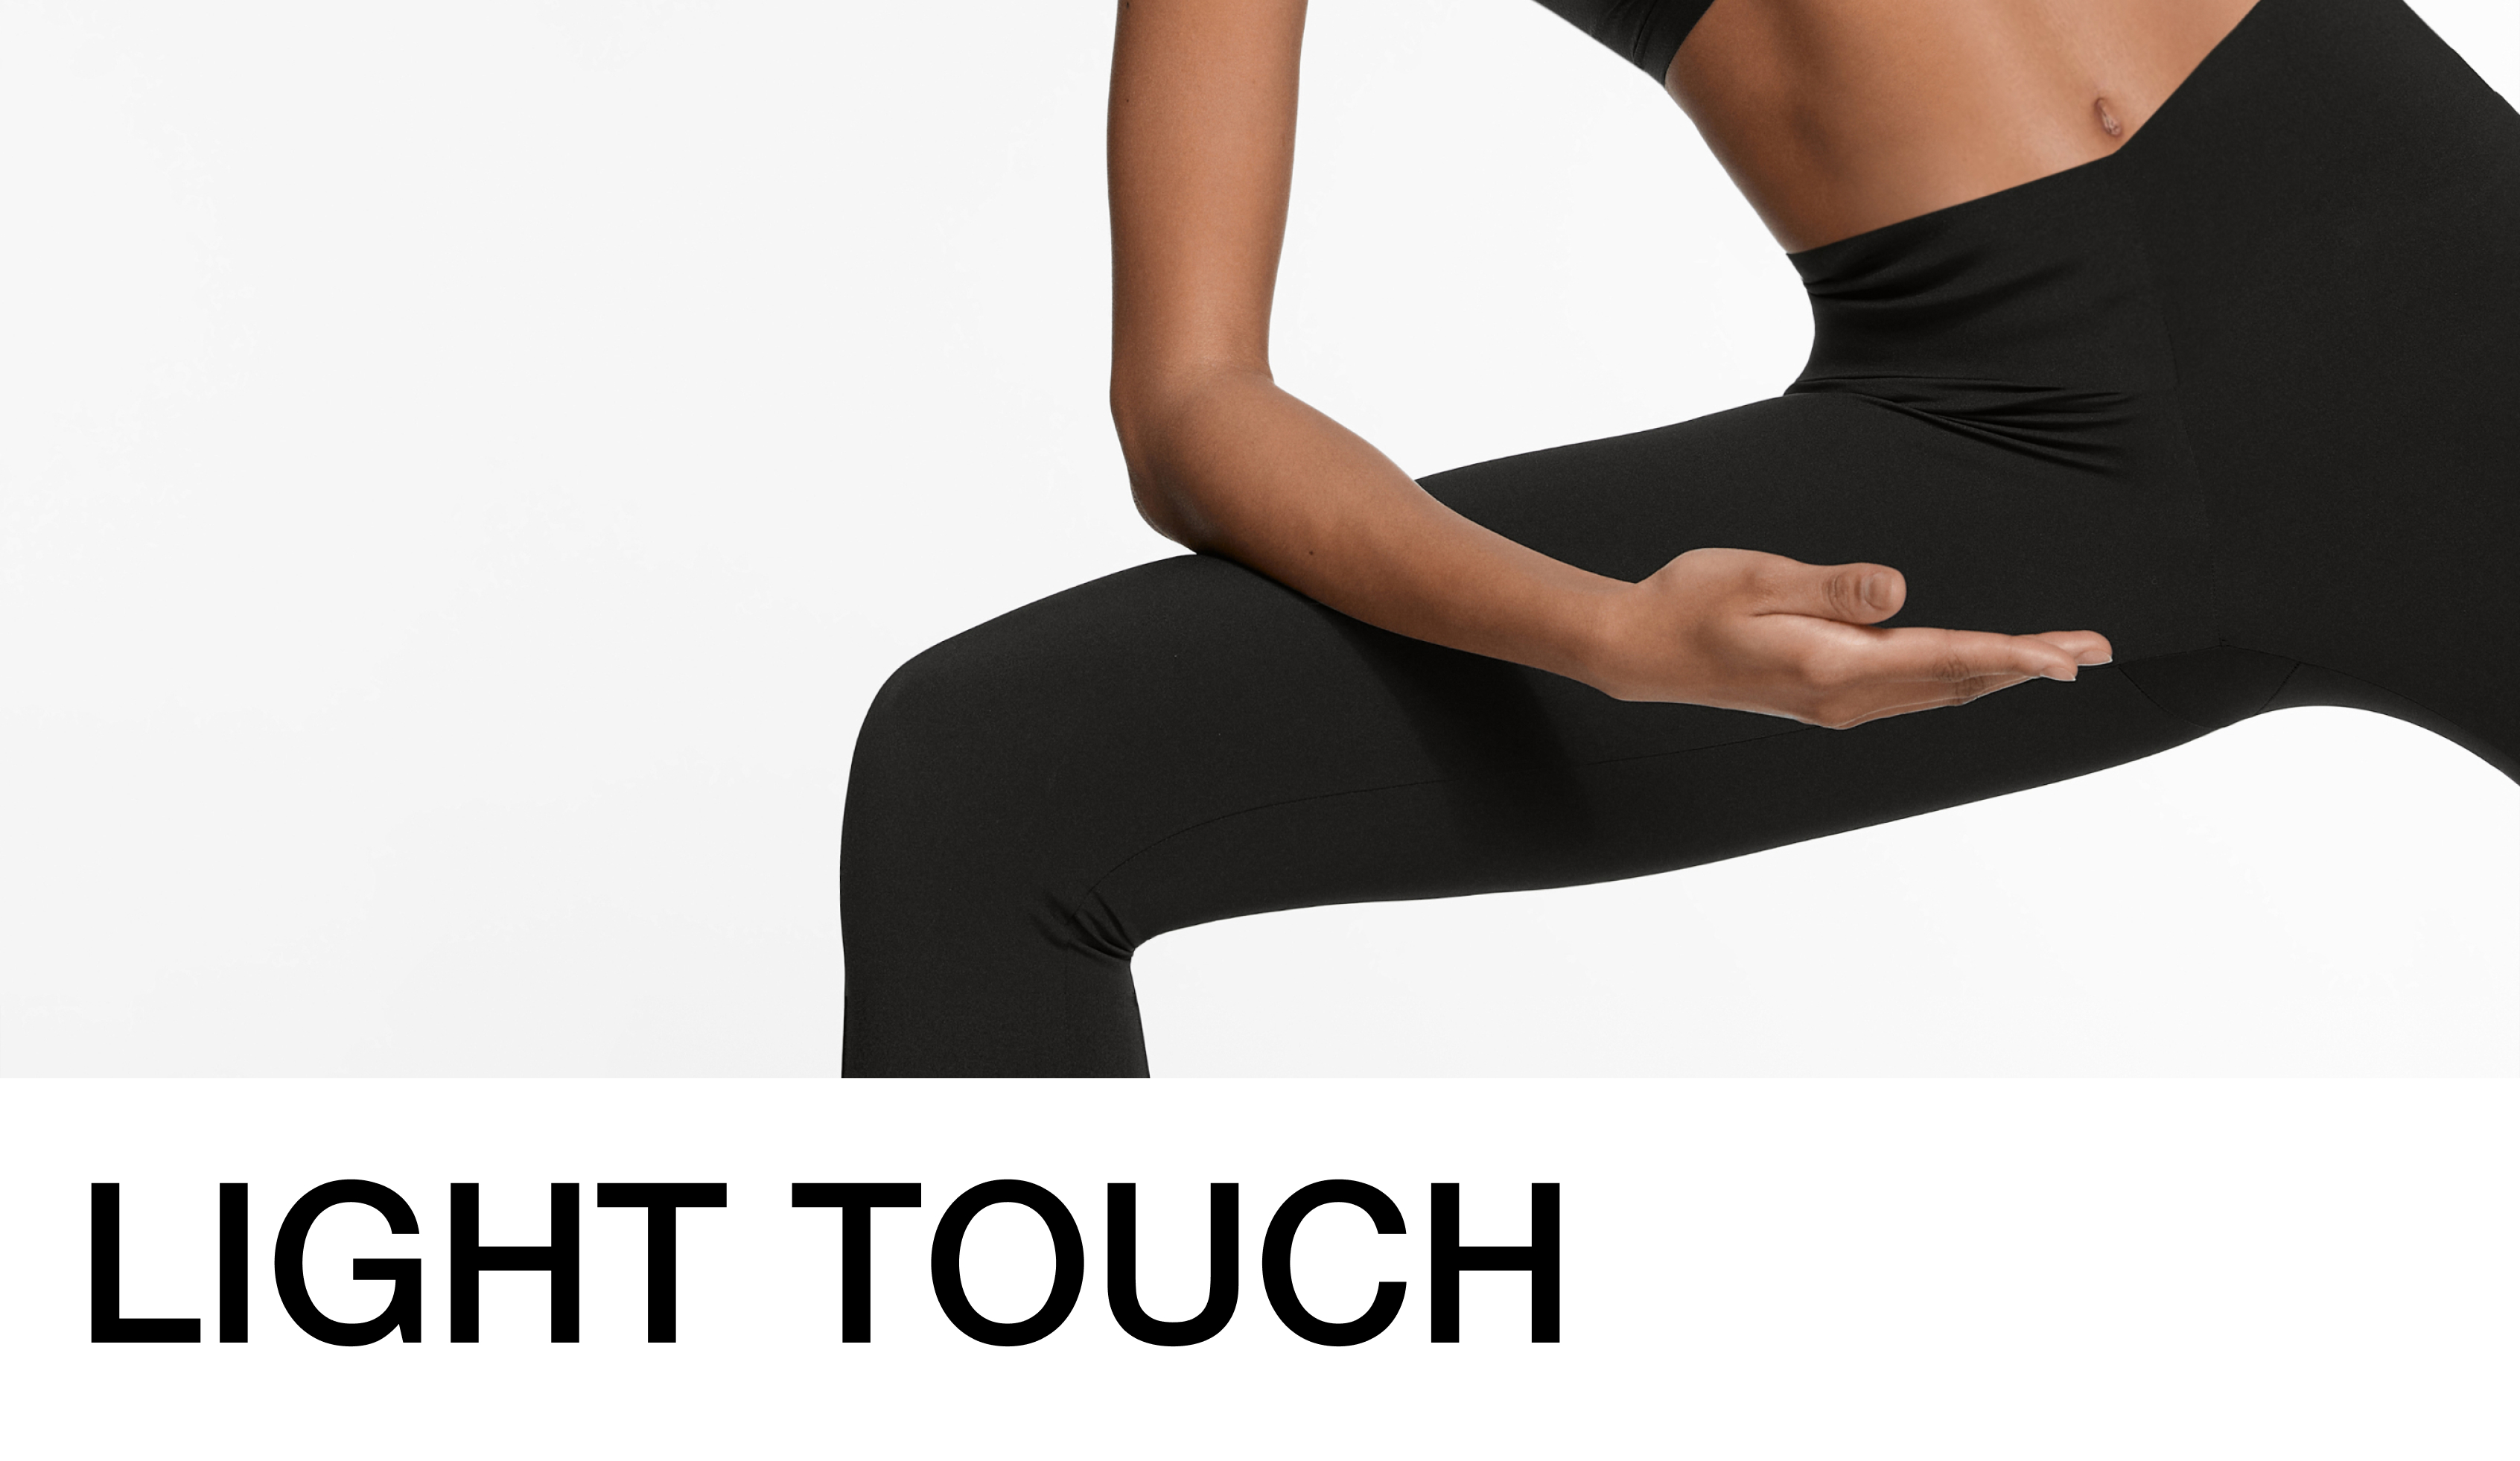 La colección 'Light Touch' de Oysho se adapta a tu entrenamiento